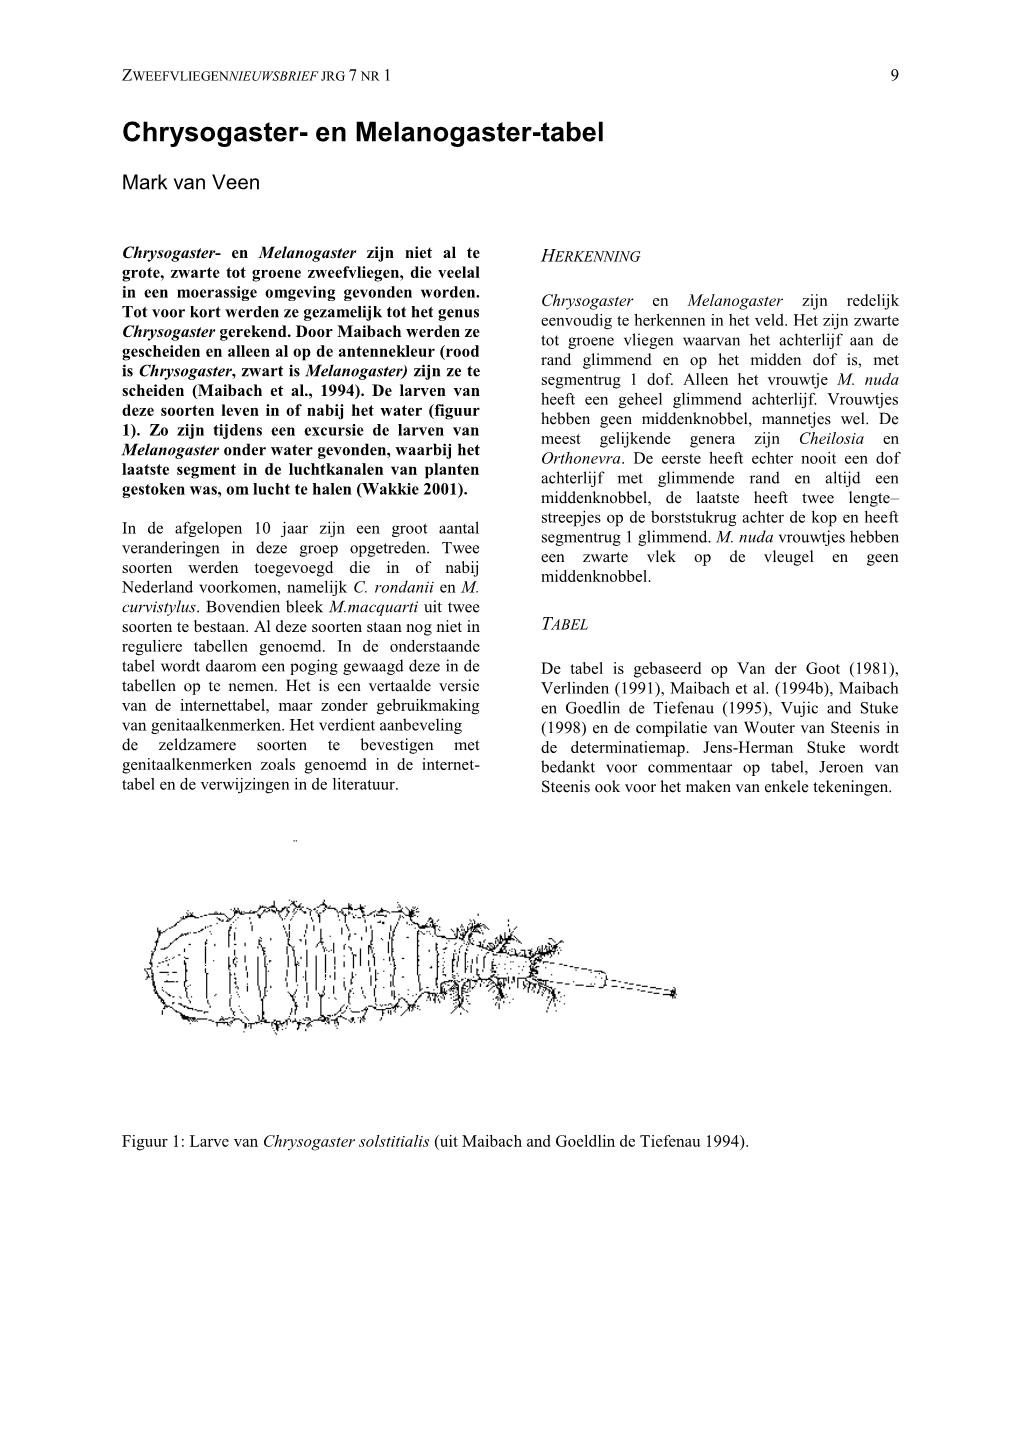 Chrysogaster- En Melanogaster-Tabel